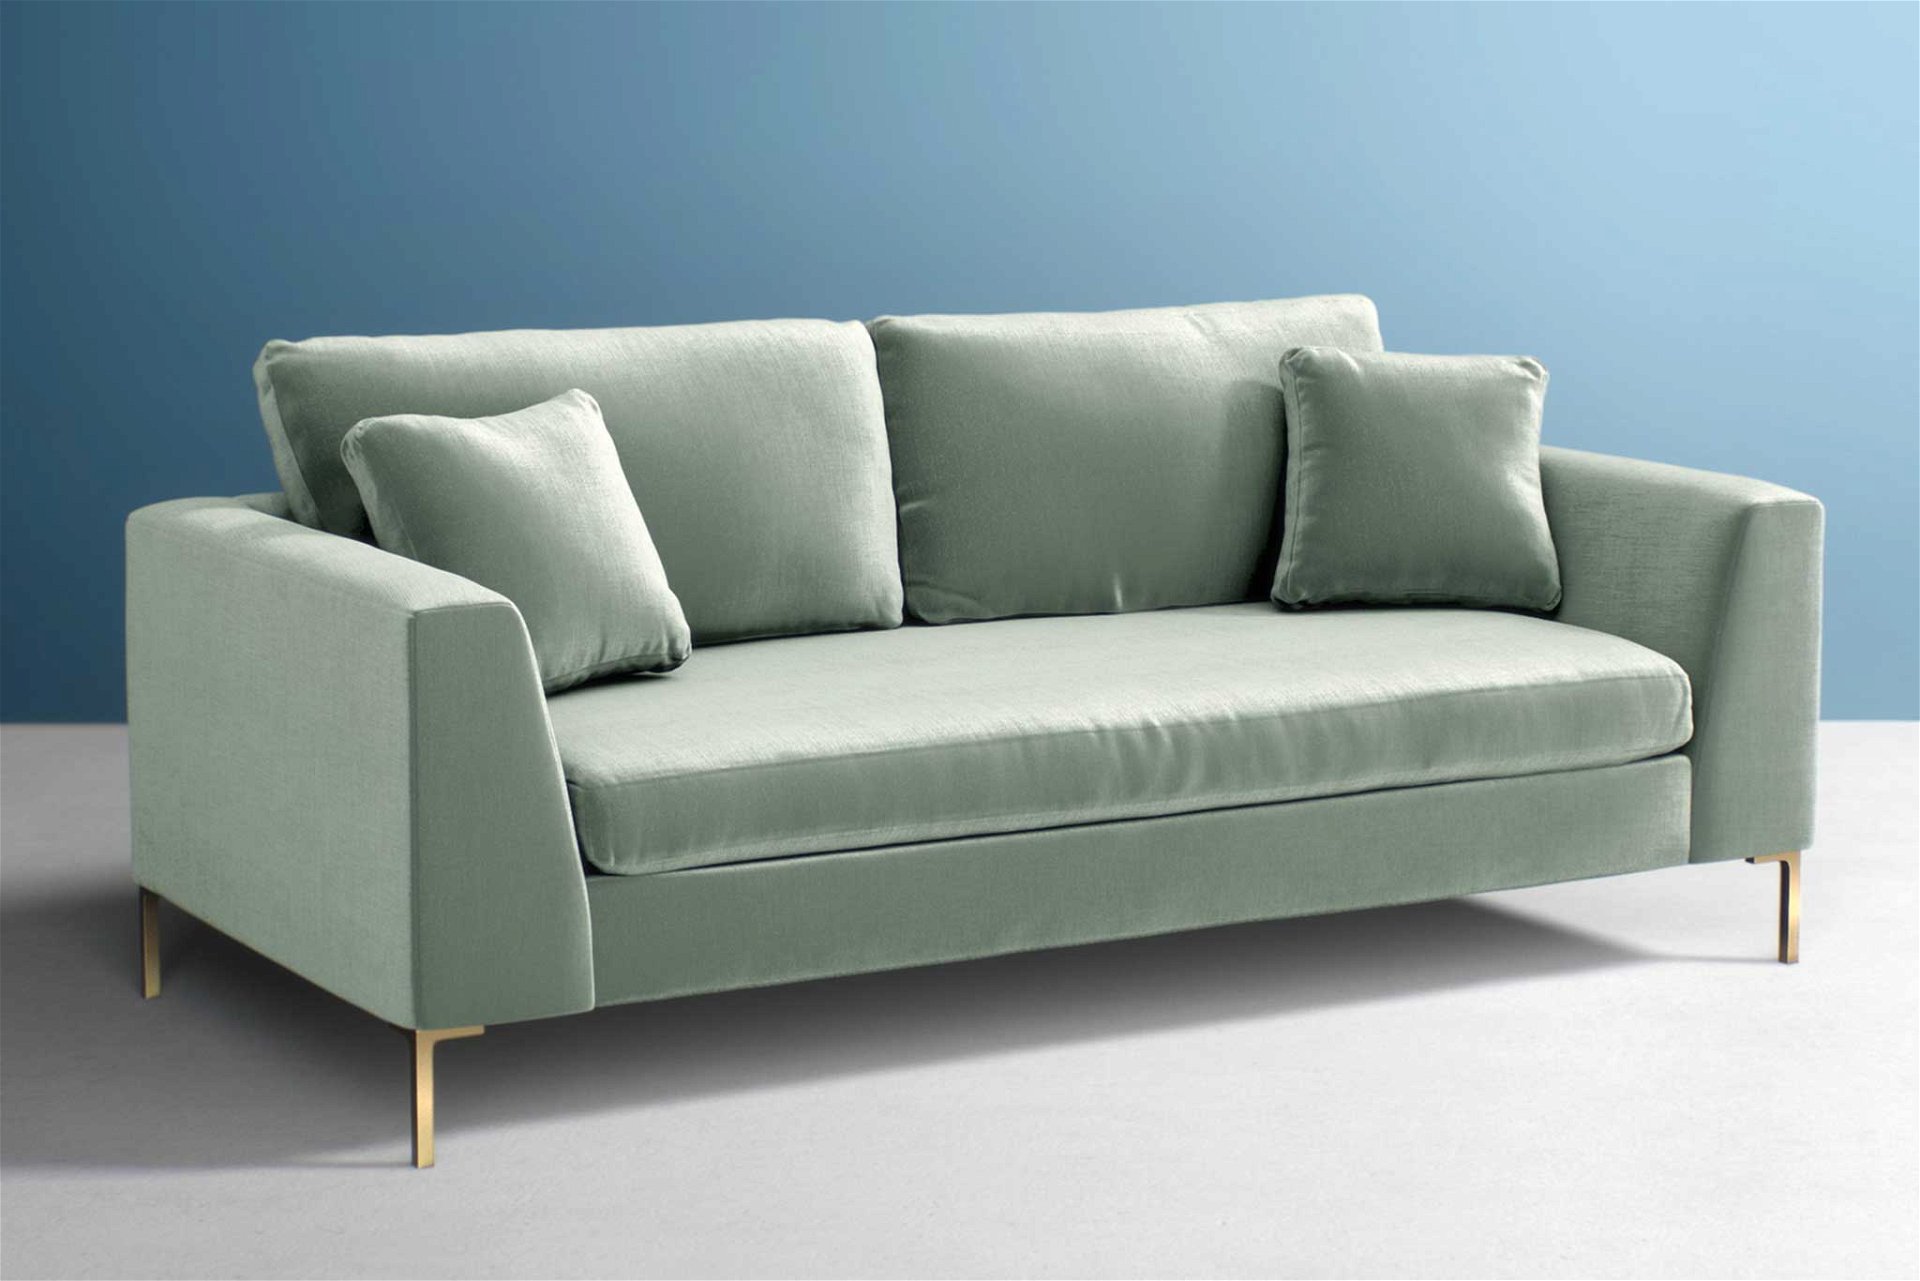 So ist das Design der Couch »Edlyn Outdoor Sofa« in Light Mint. Die klare Linienführung orientiert sich an modernen italienischen Arbeiten. anthropologie.com